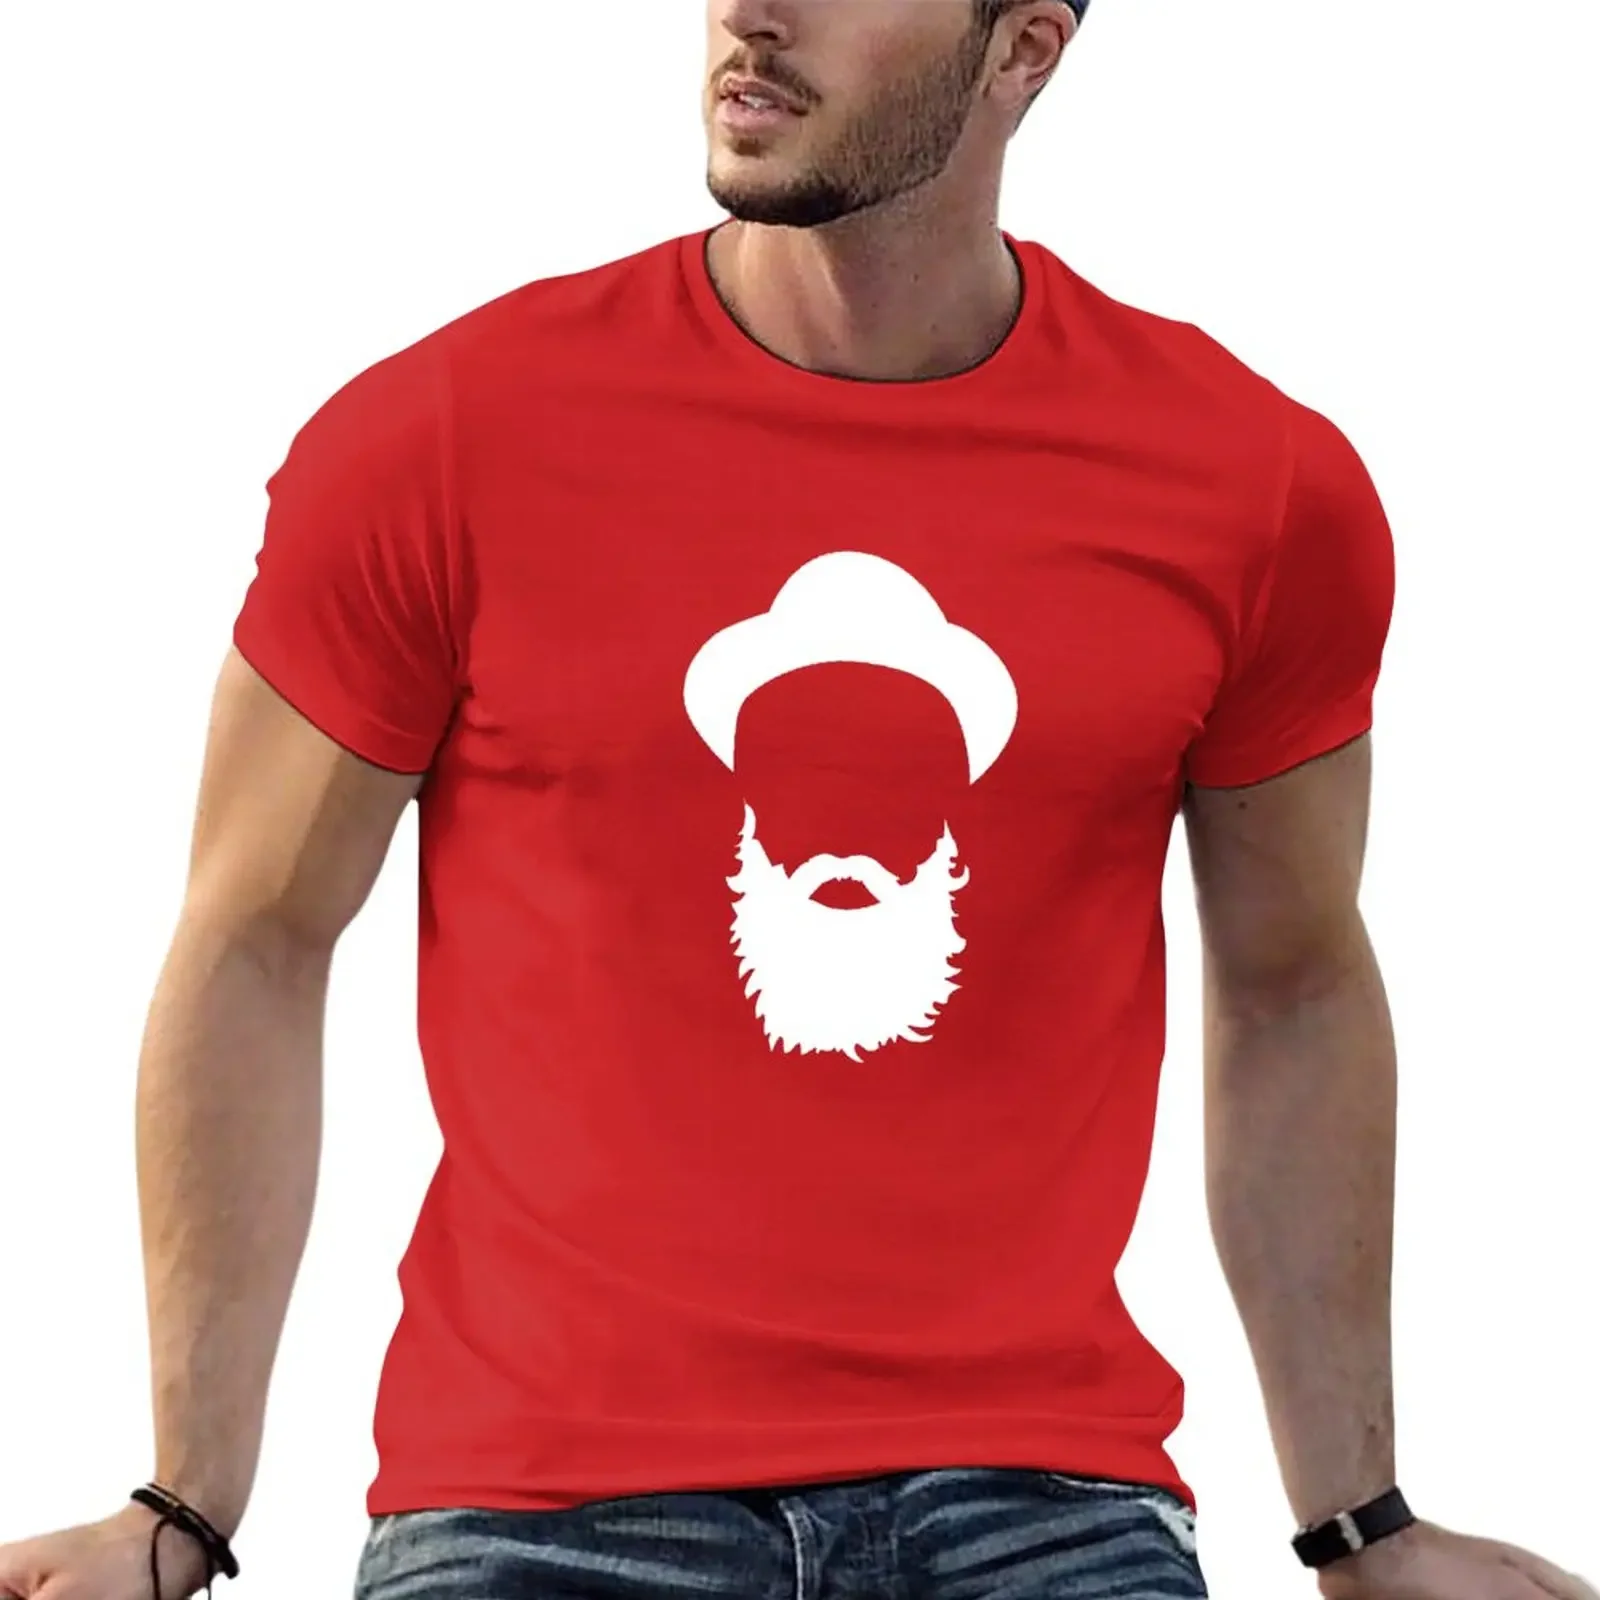 

Футболка с бородой, великолепные футболки, облегающие футболки для мужчин